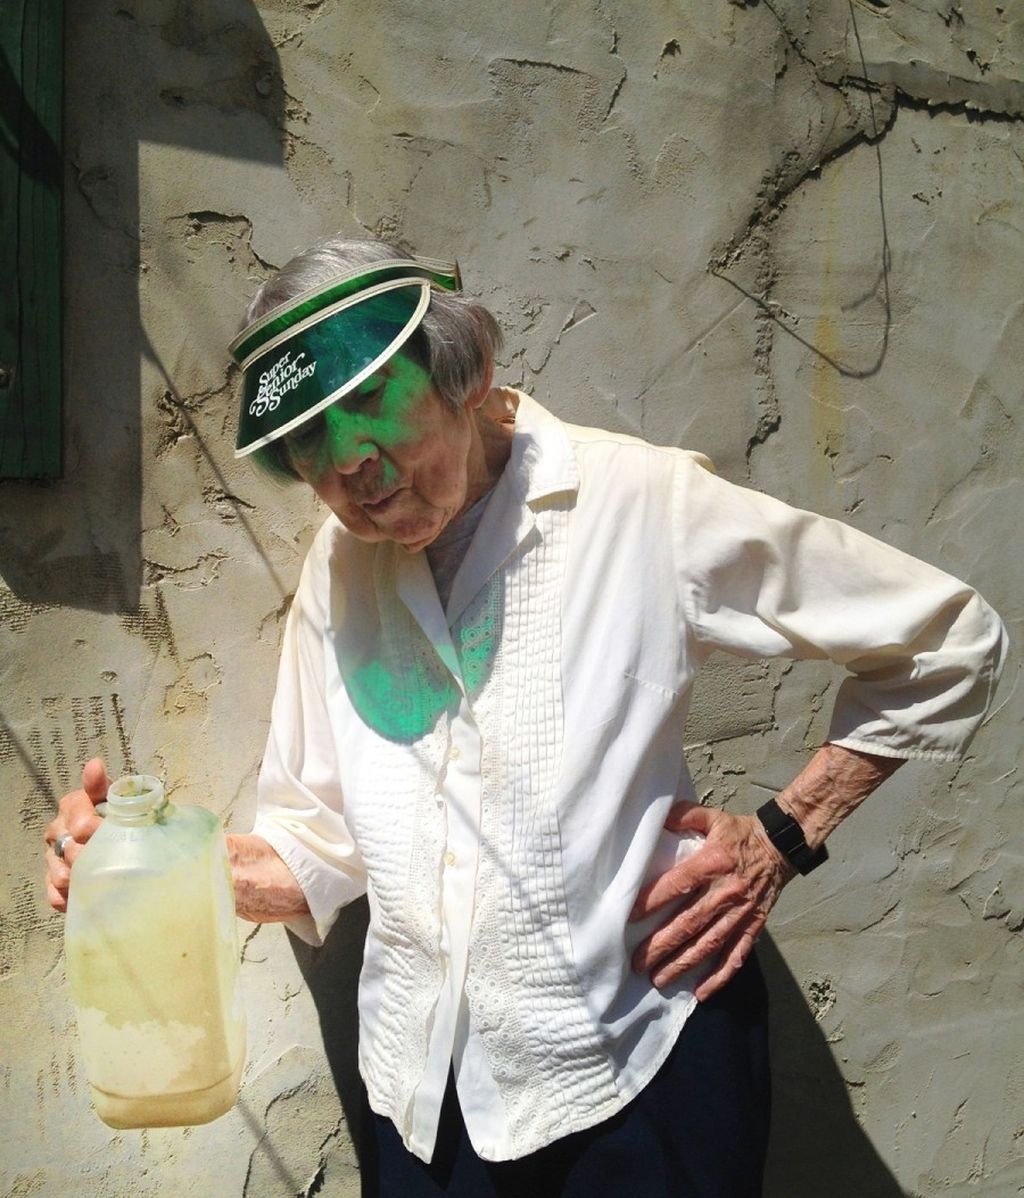 Con 97 años, la artista Marie Ulmer se ha convertido en todo un fenómeno de Instagram